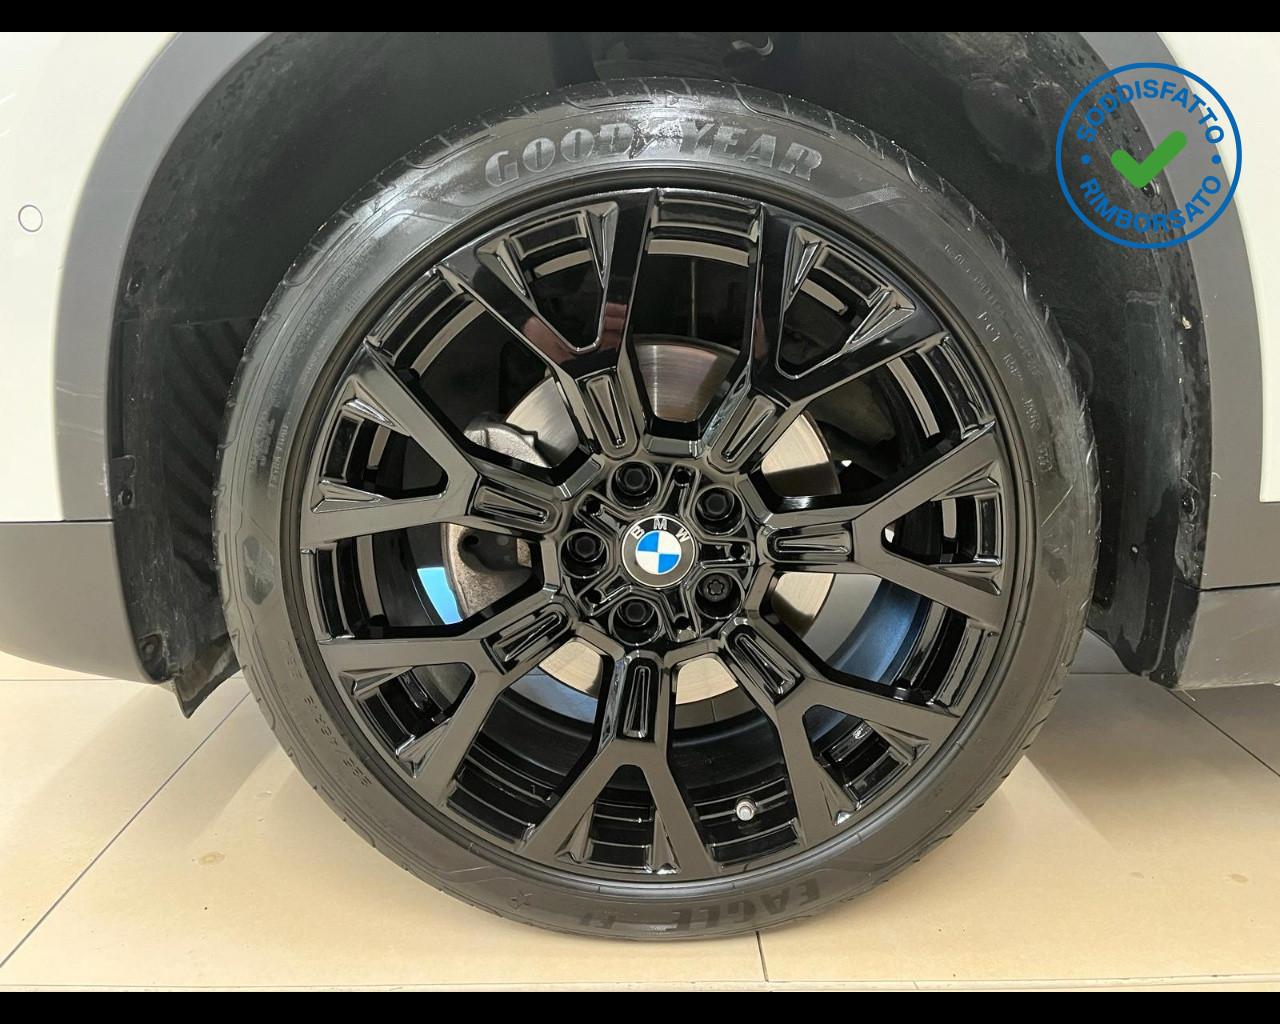 BMW X1 (F48) X1 xDrive18d xLine